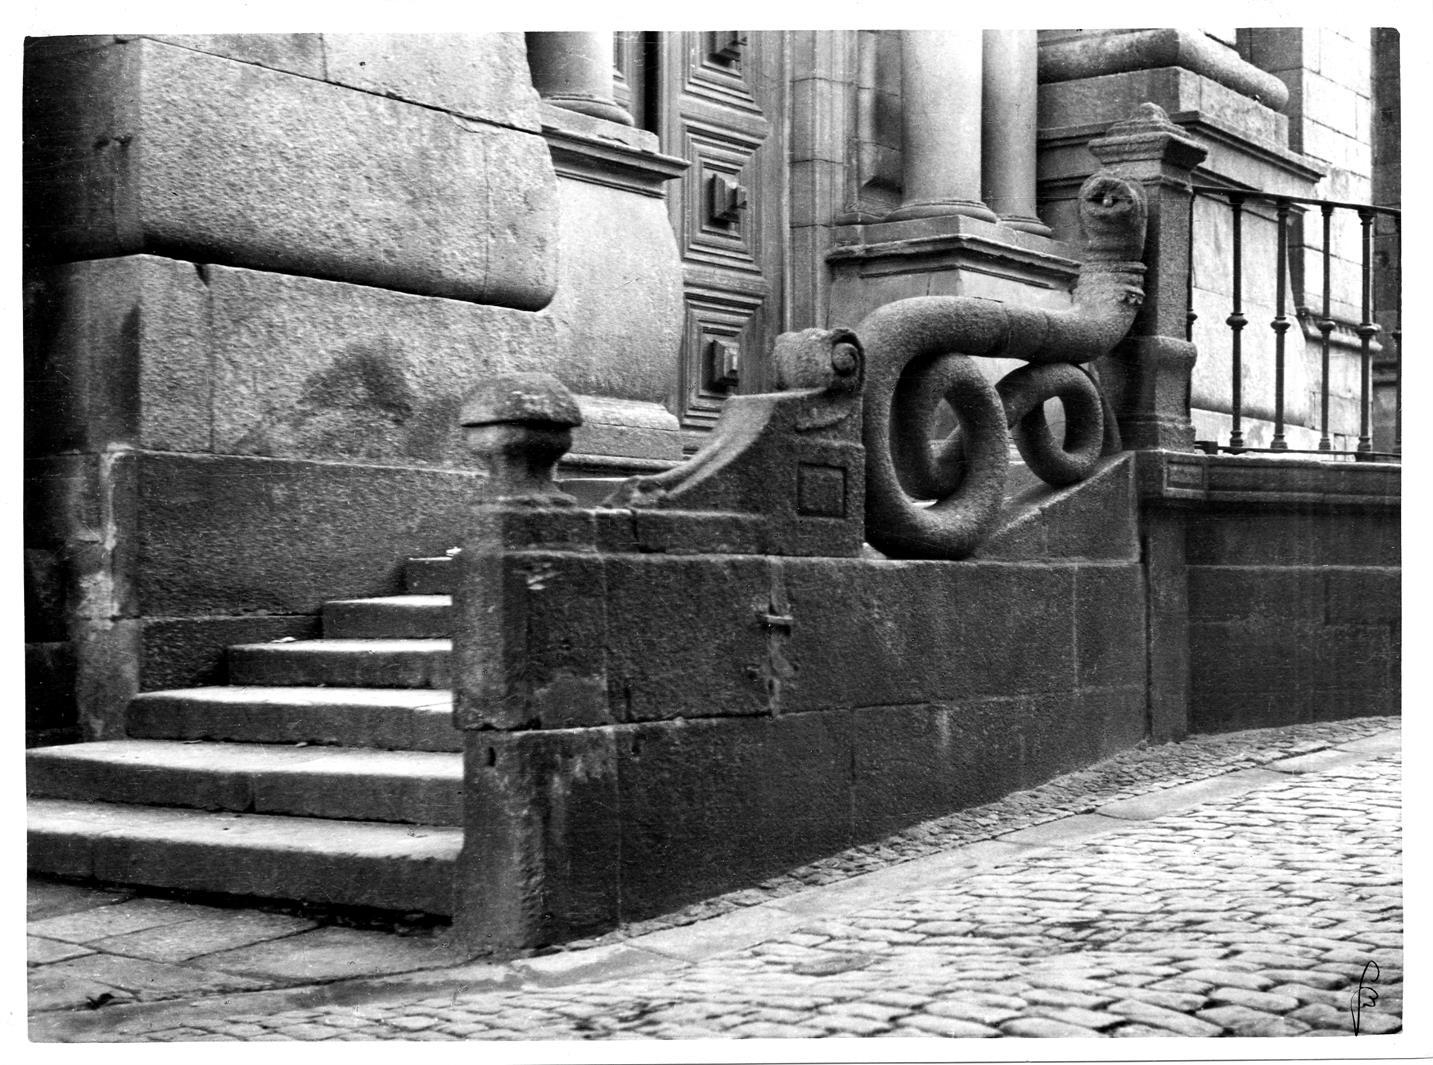 Aspectos arqueológicos e artísticos da cidade do Porto : escadas de acesso à porta principal da Sé